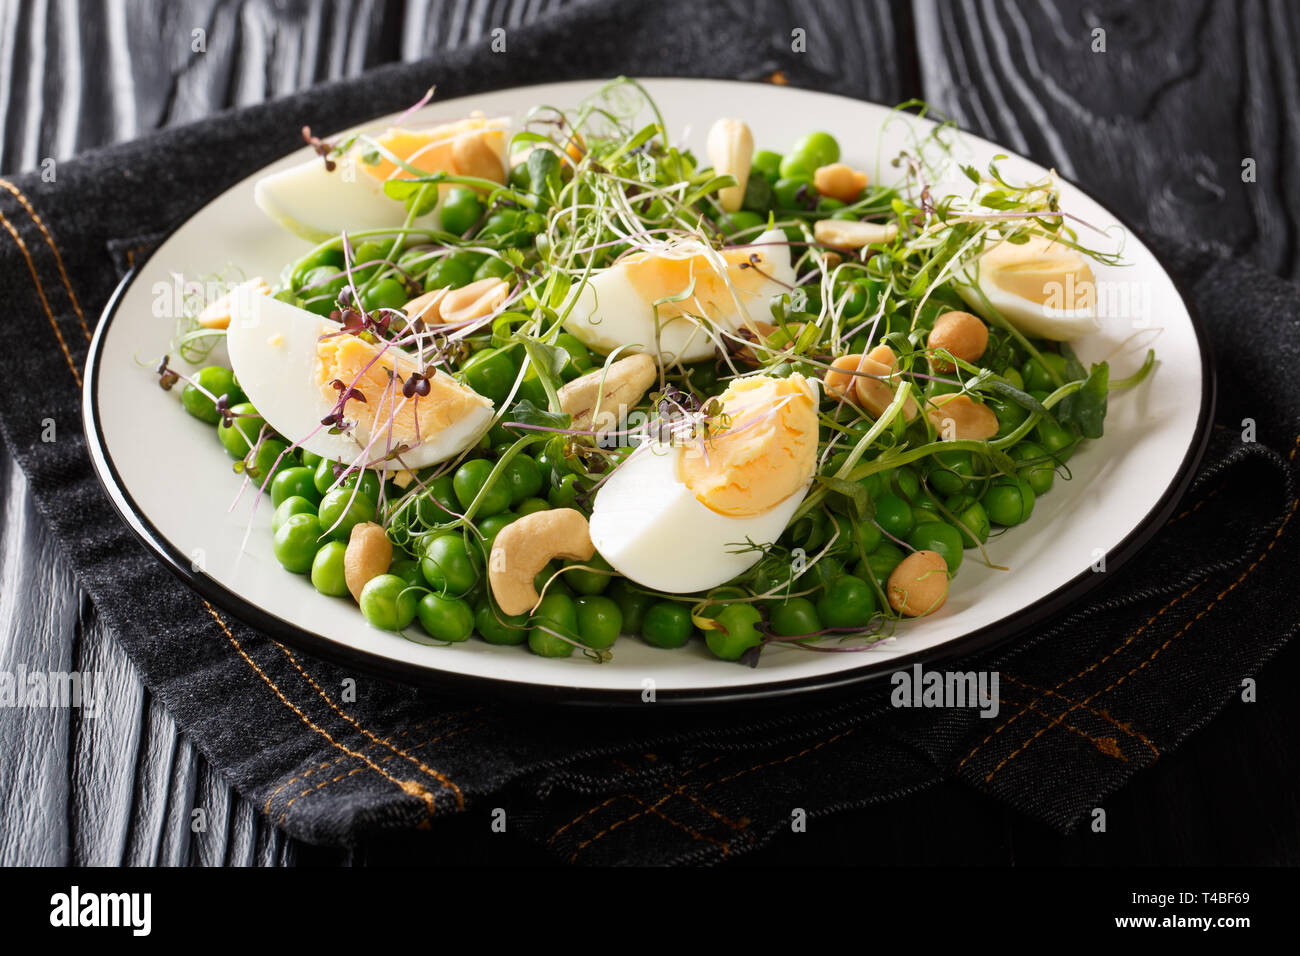 Gesunden Salat mit frischen Erbsen, microgreen, Nüsse und Eier close-up auf einem Teller auf den Tisch. Horizontale Stockfoto